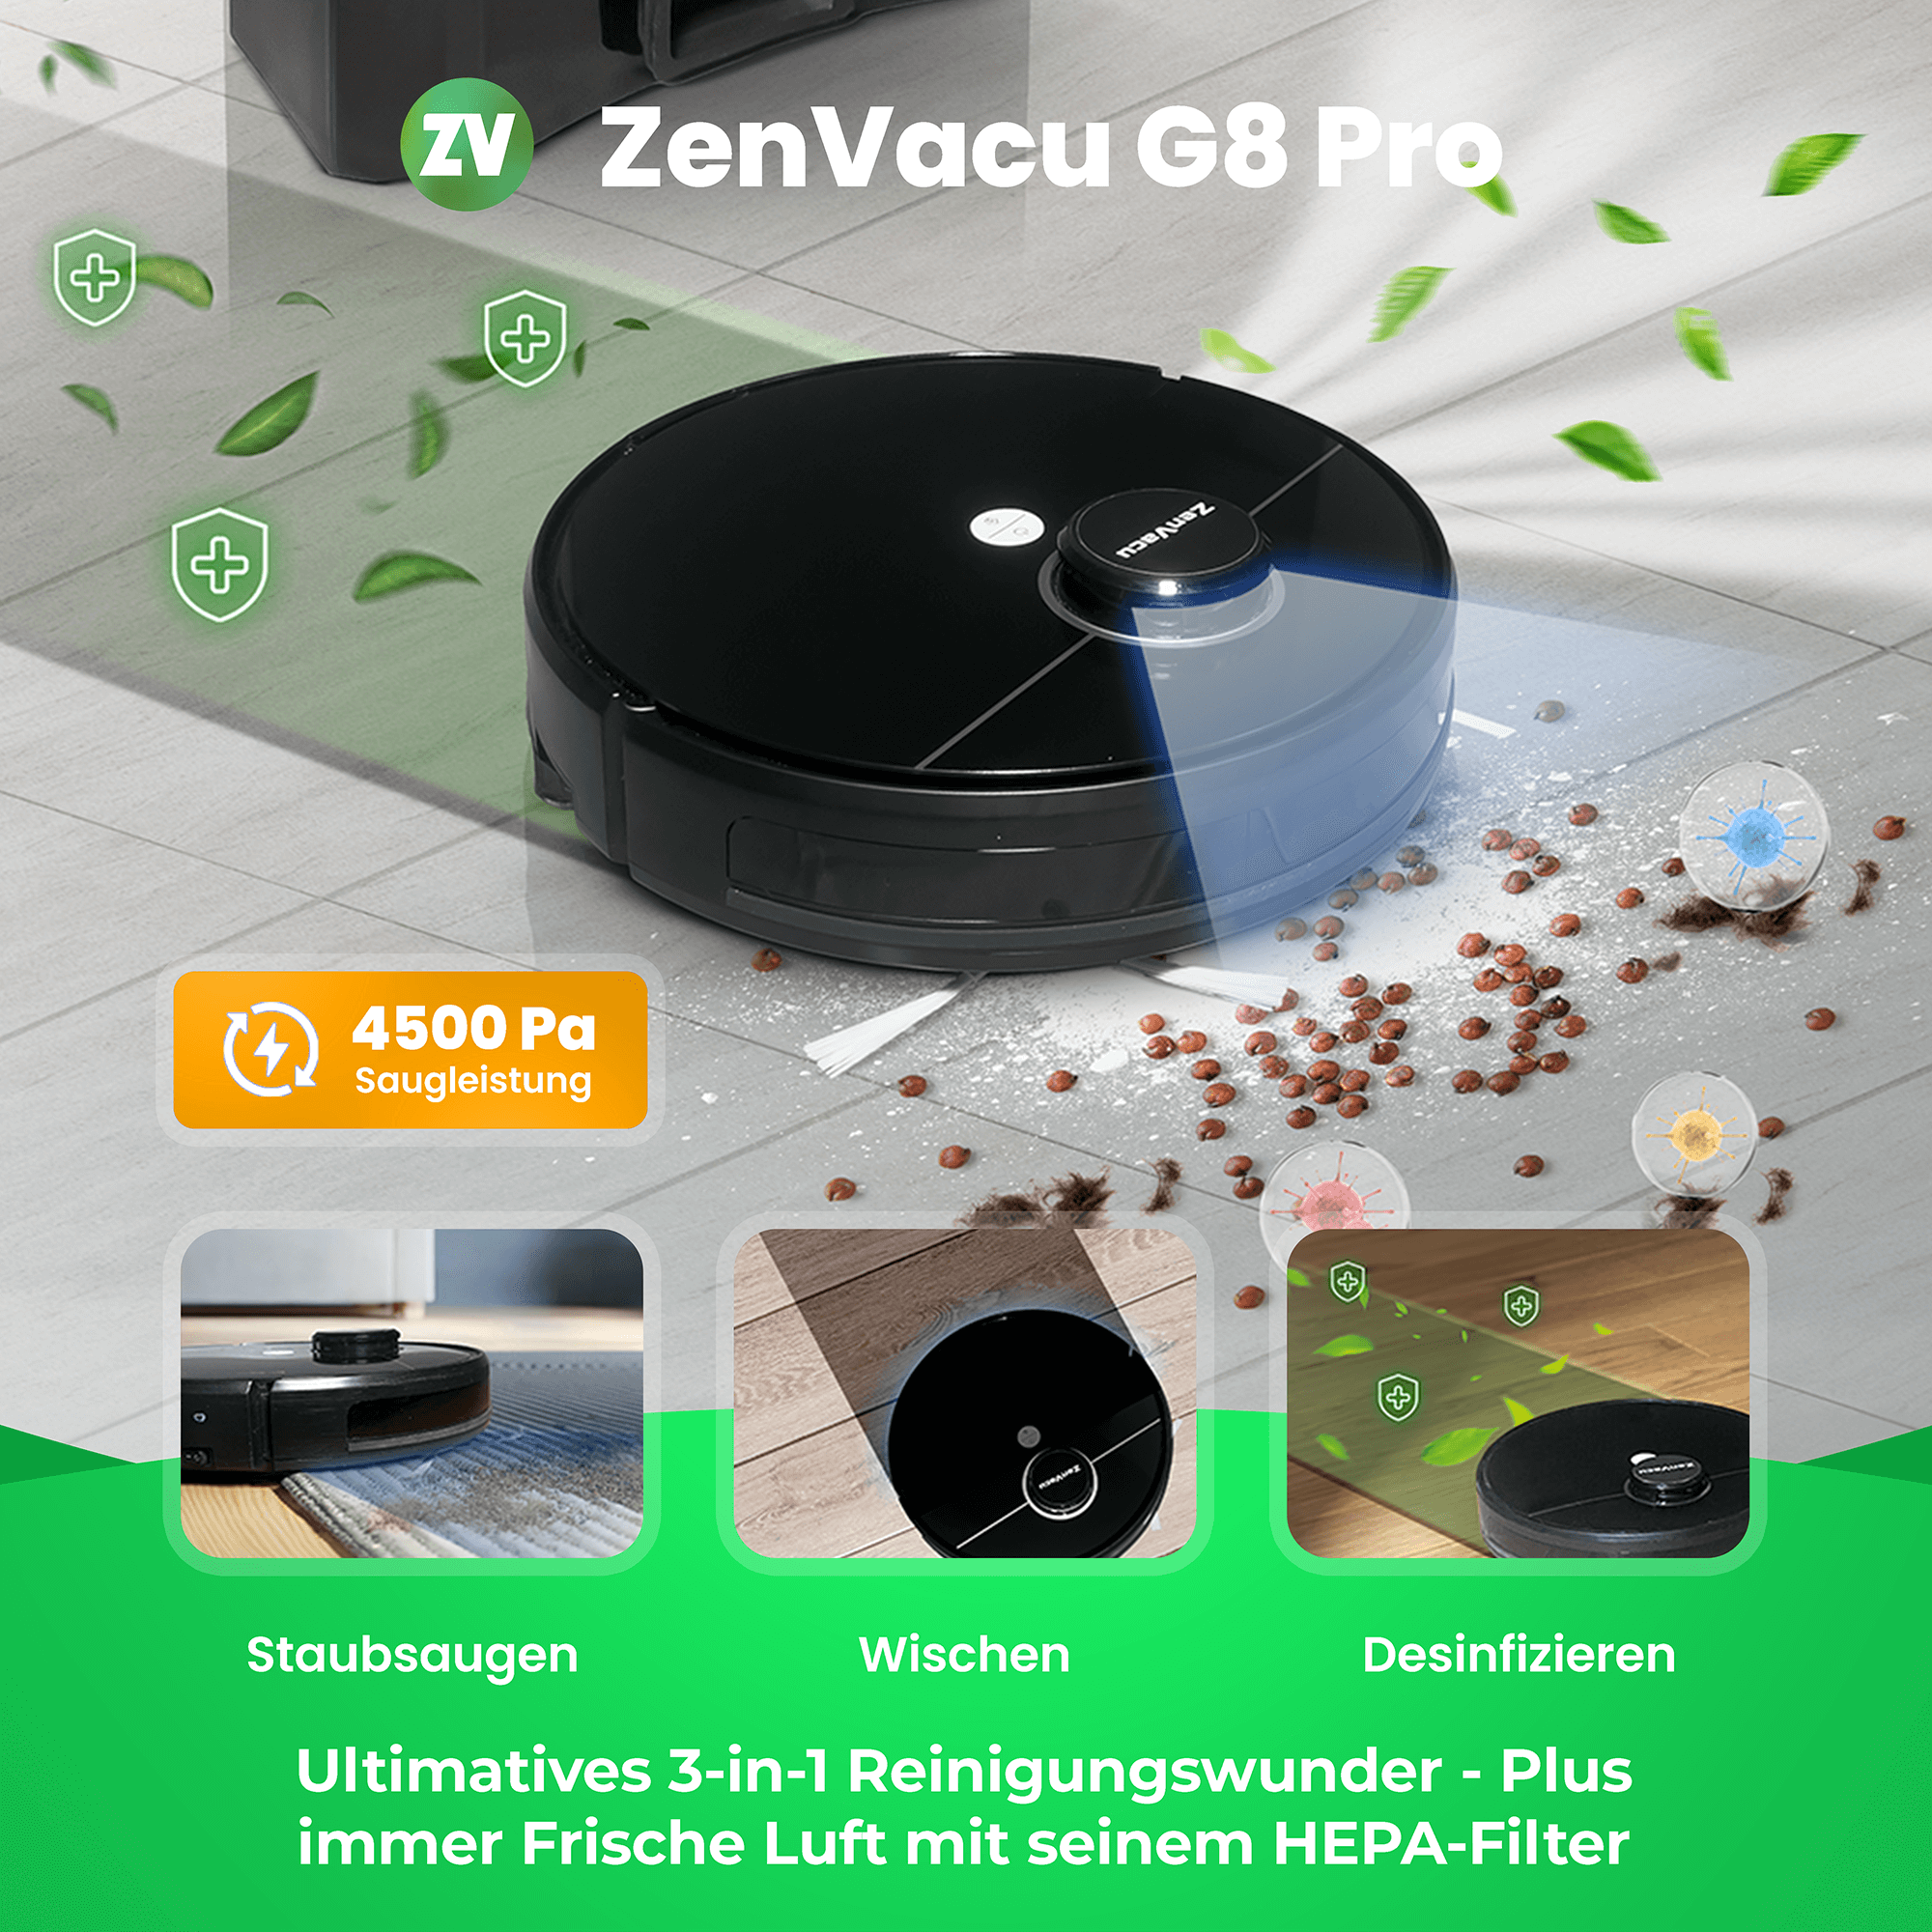 3-in-1 Staubsauger, ZenVacu G8 Pro Saugroboter: Staubsaugen, Wischen und Desinfizieren mit Selbstentleerungsfunktion. Außerdem reinigt er die Luft mit seinem Hepa 13 Filter.